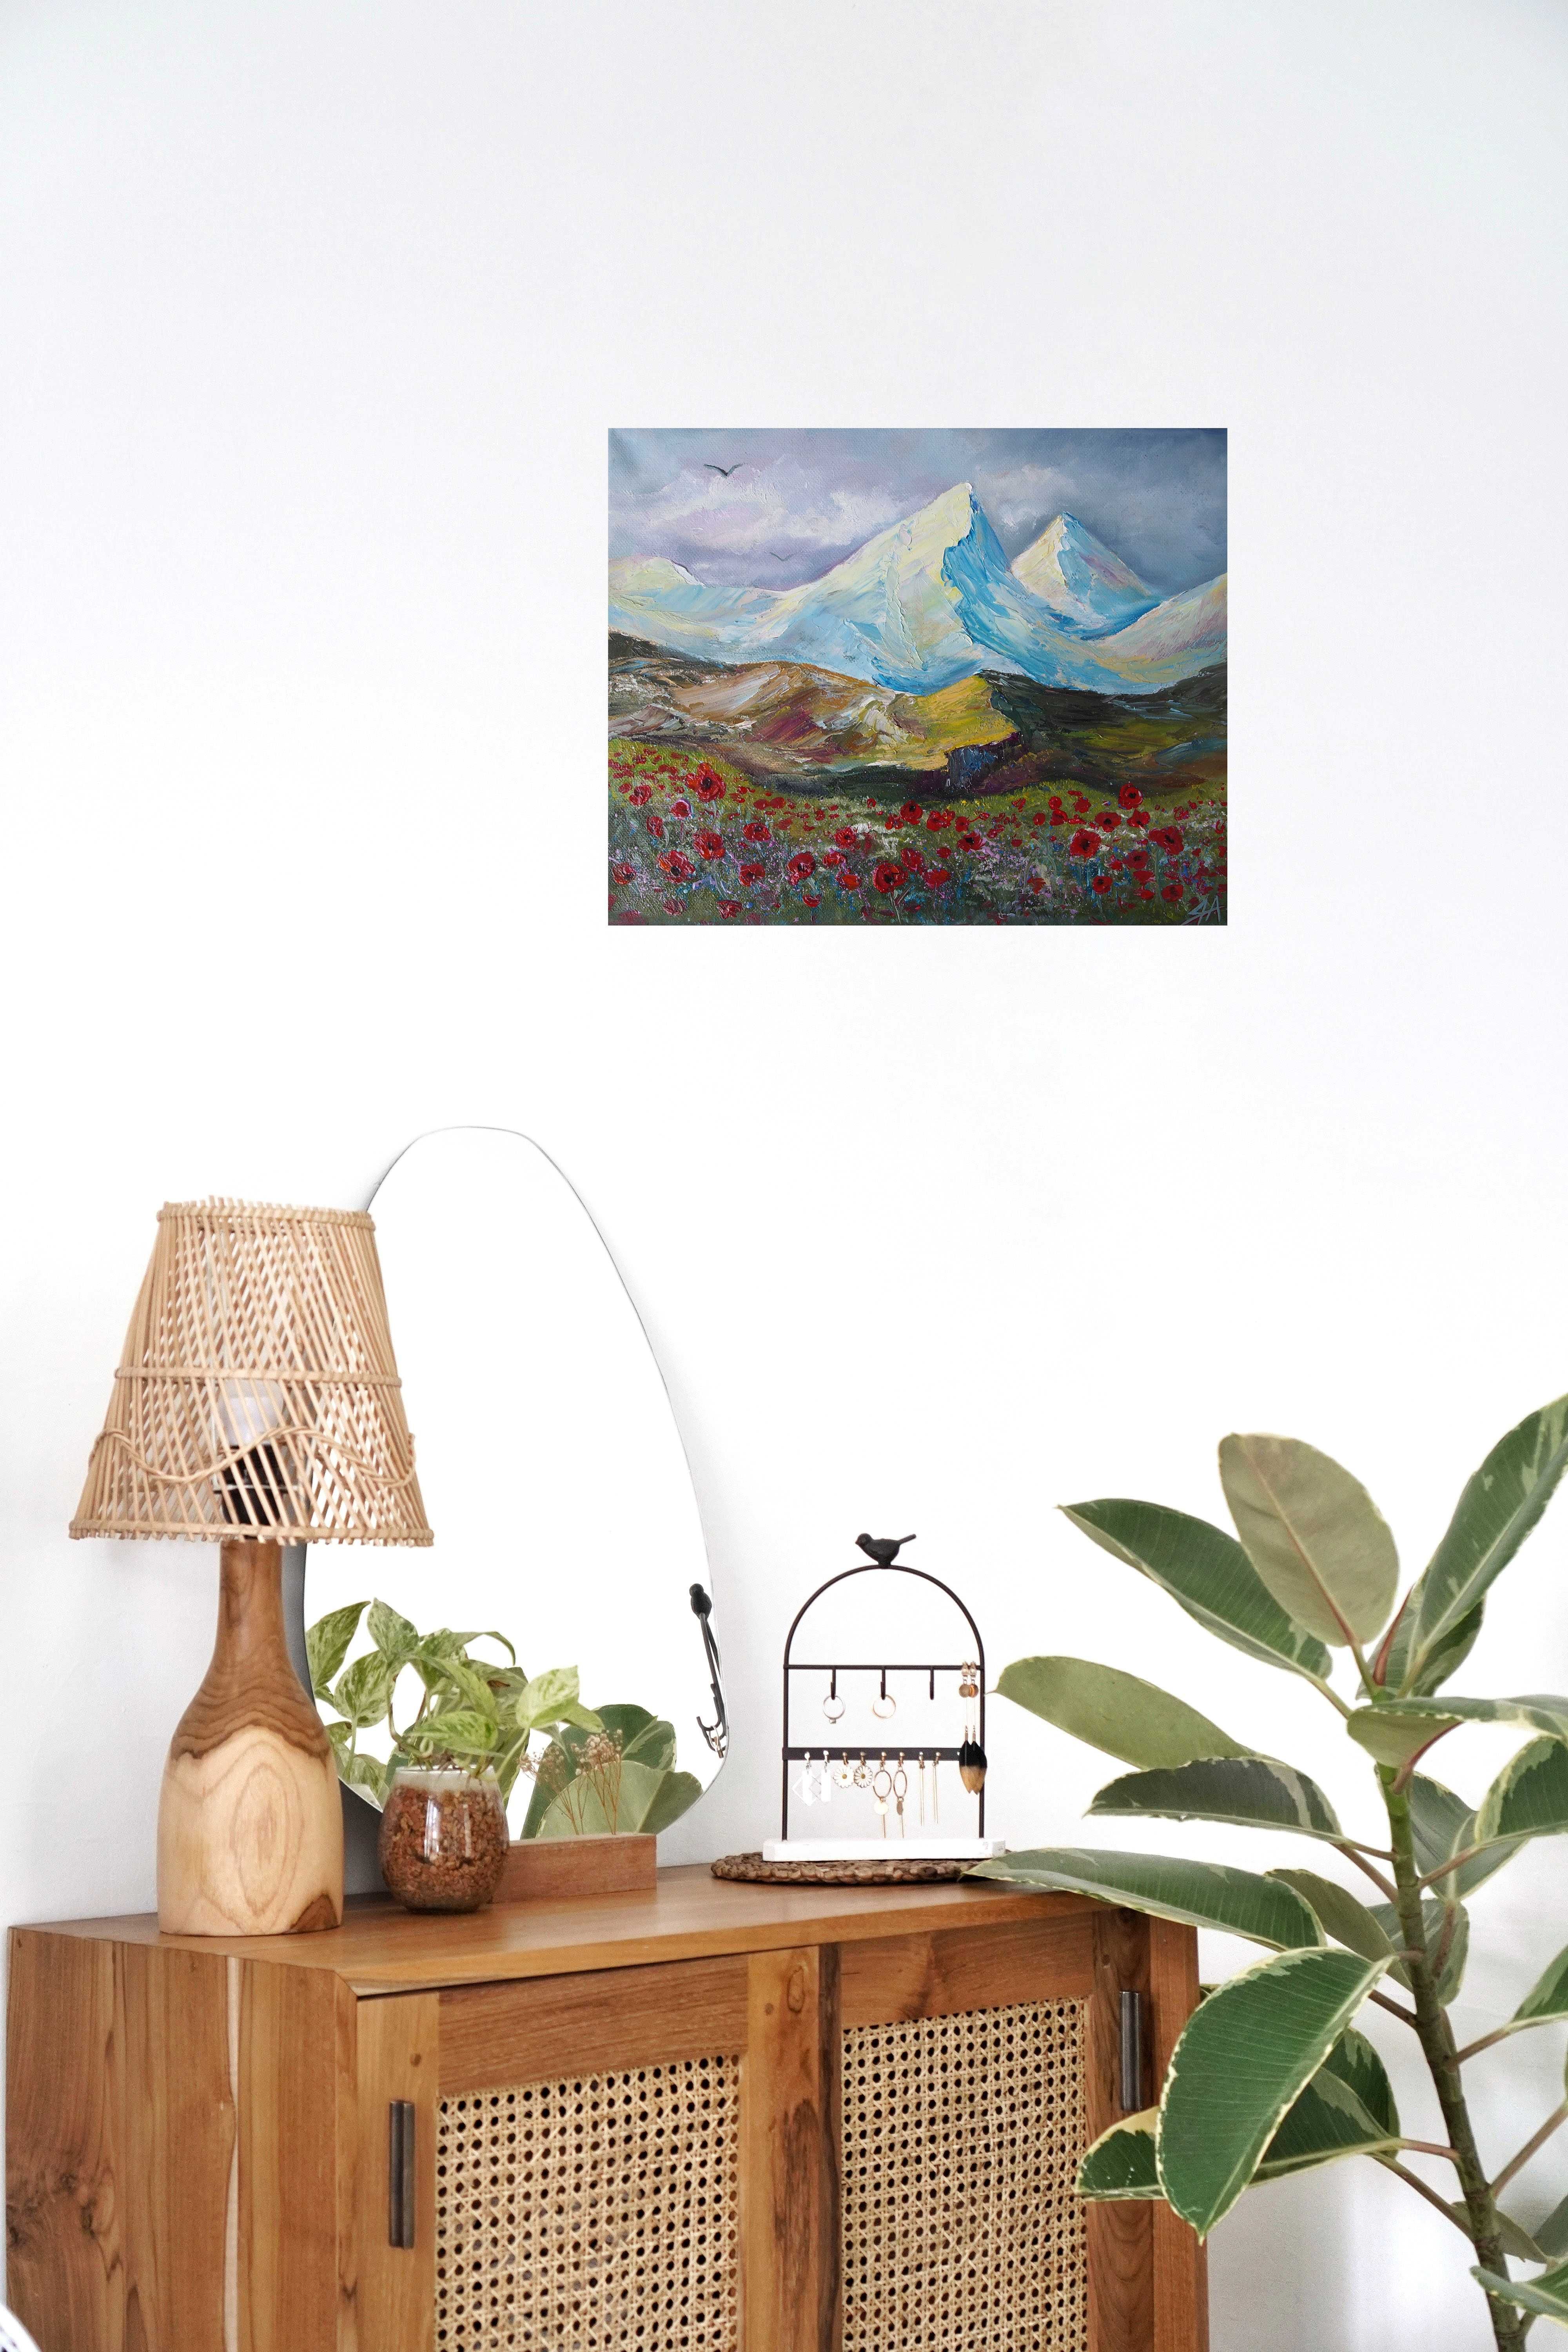 Obraz olejny na płótnie "Wiosna w górach"